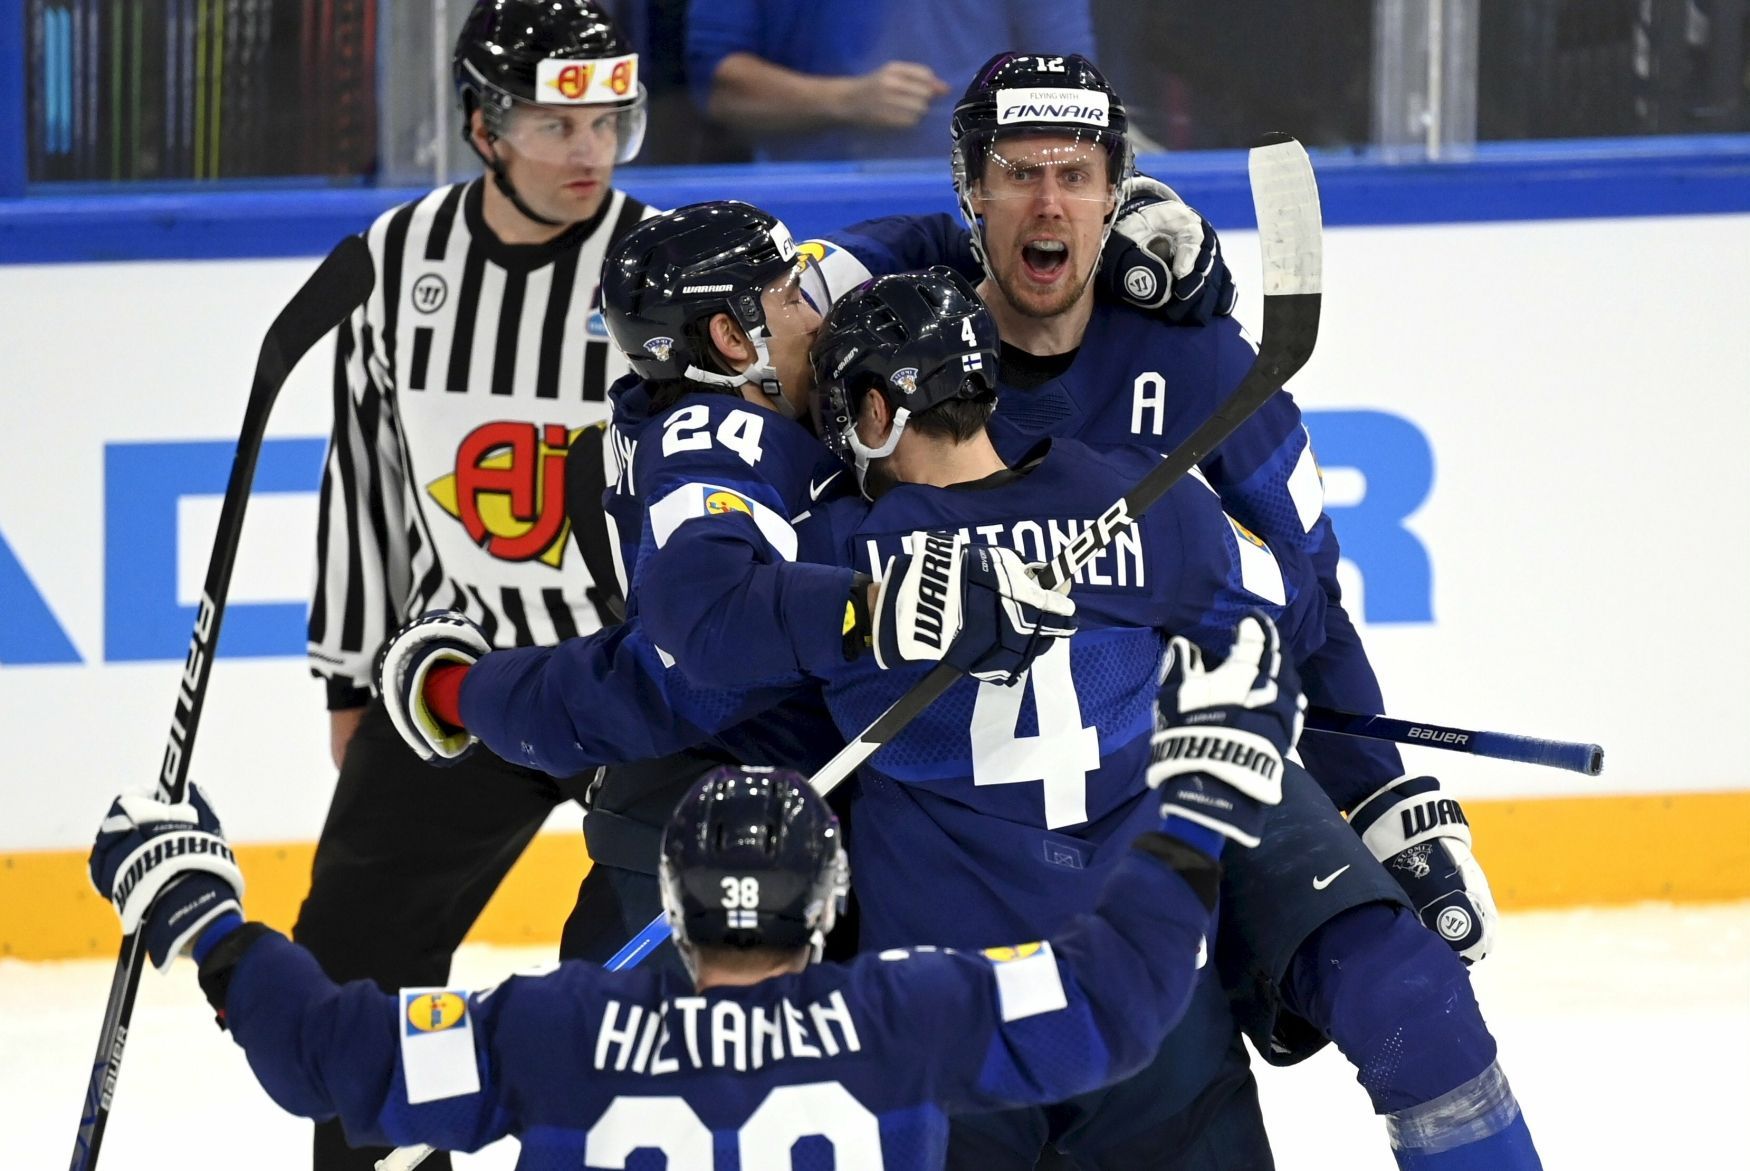 Finové slaví gól ve čtvrtfinále MS 2022 Slovensko - Finsko